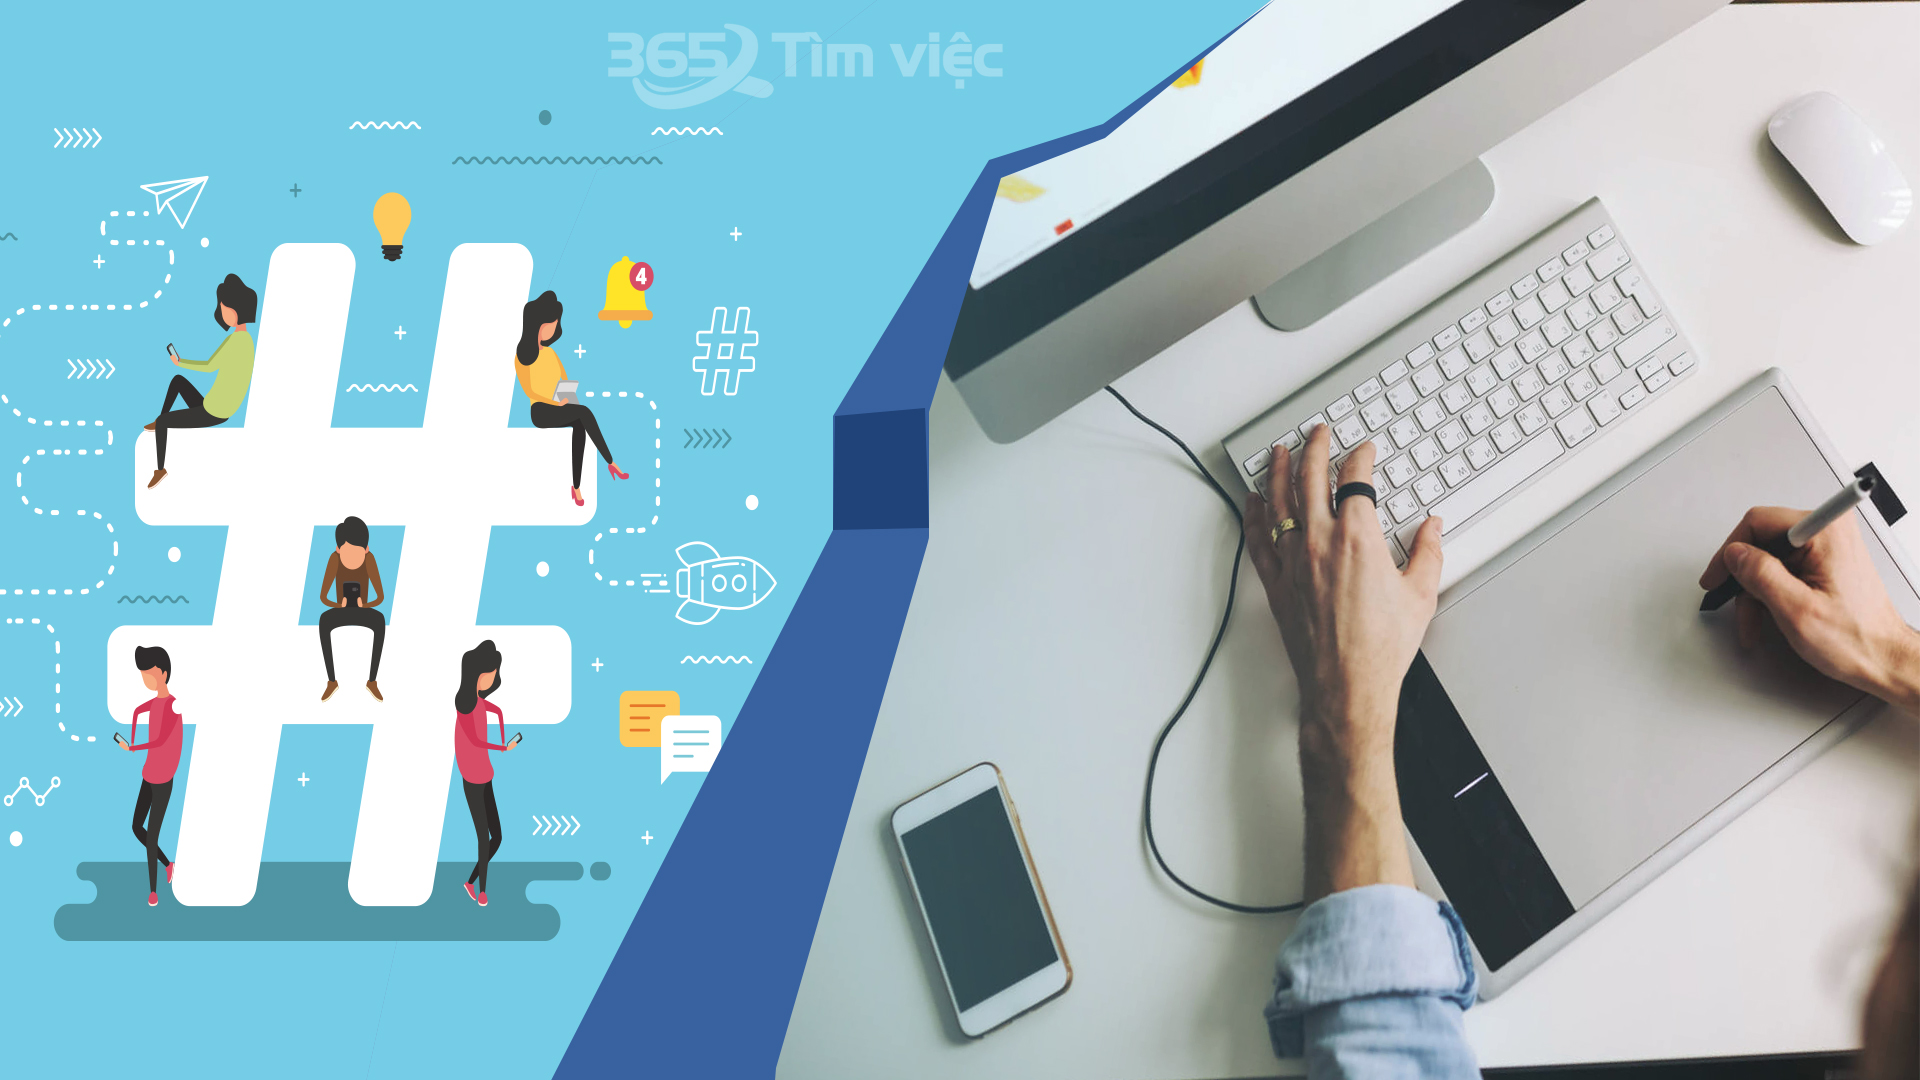 Timviec365.vn - nơi gửi gắm niềm tin của những ứng viên tìm kiếm việc làm